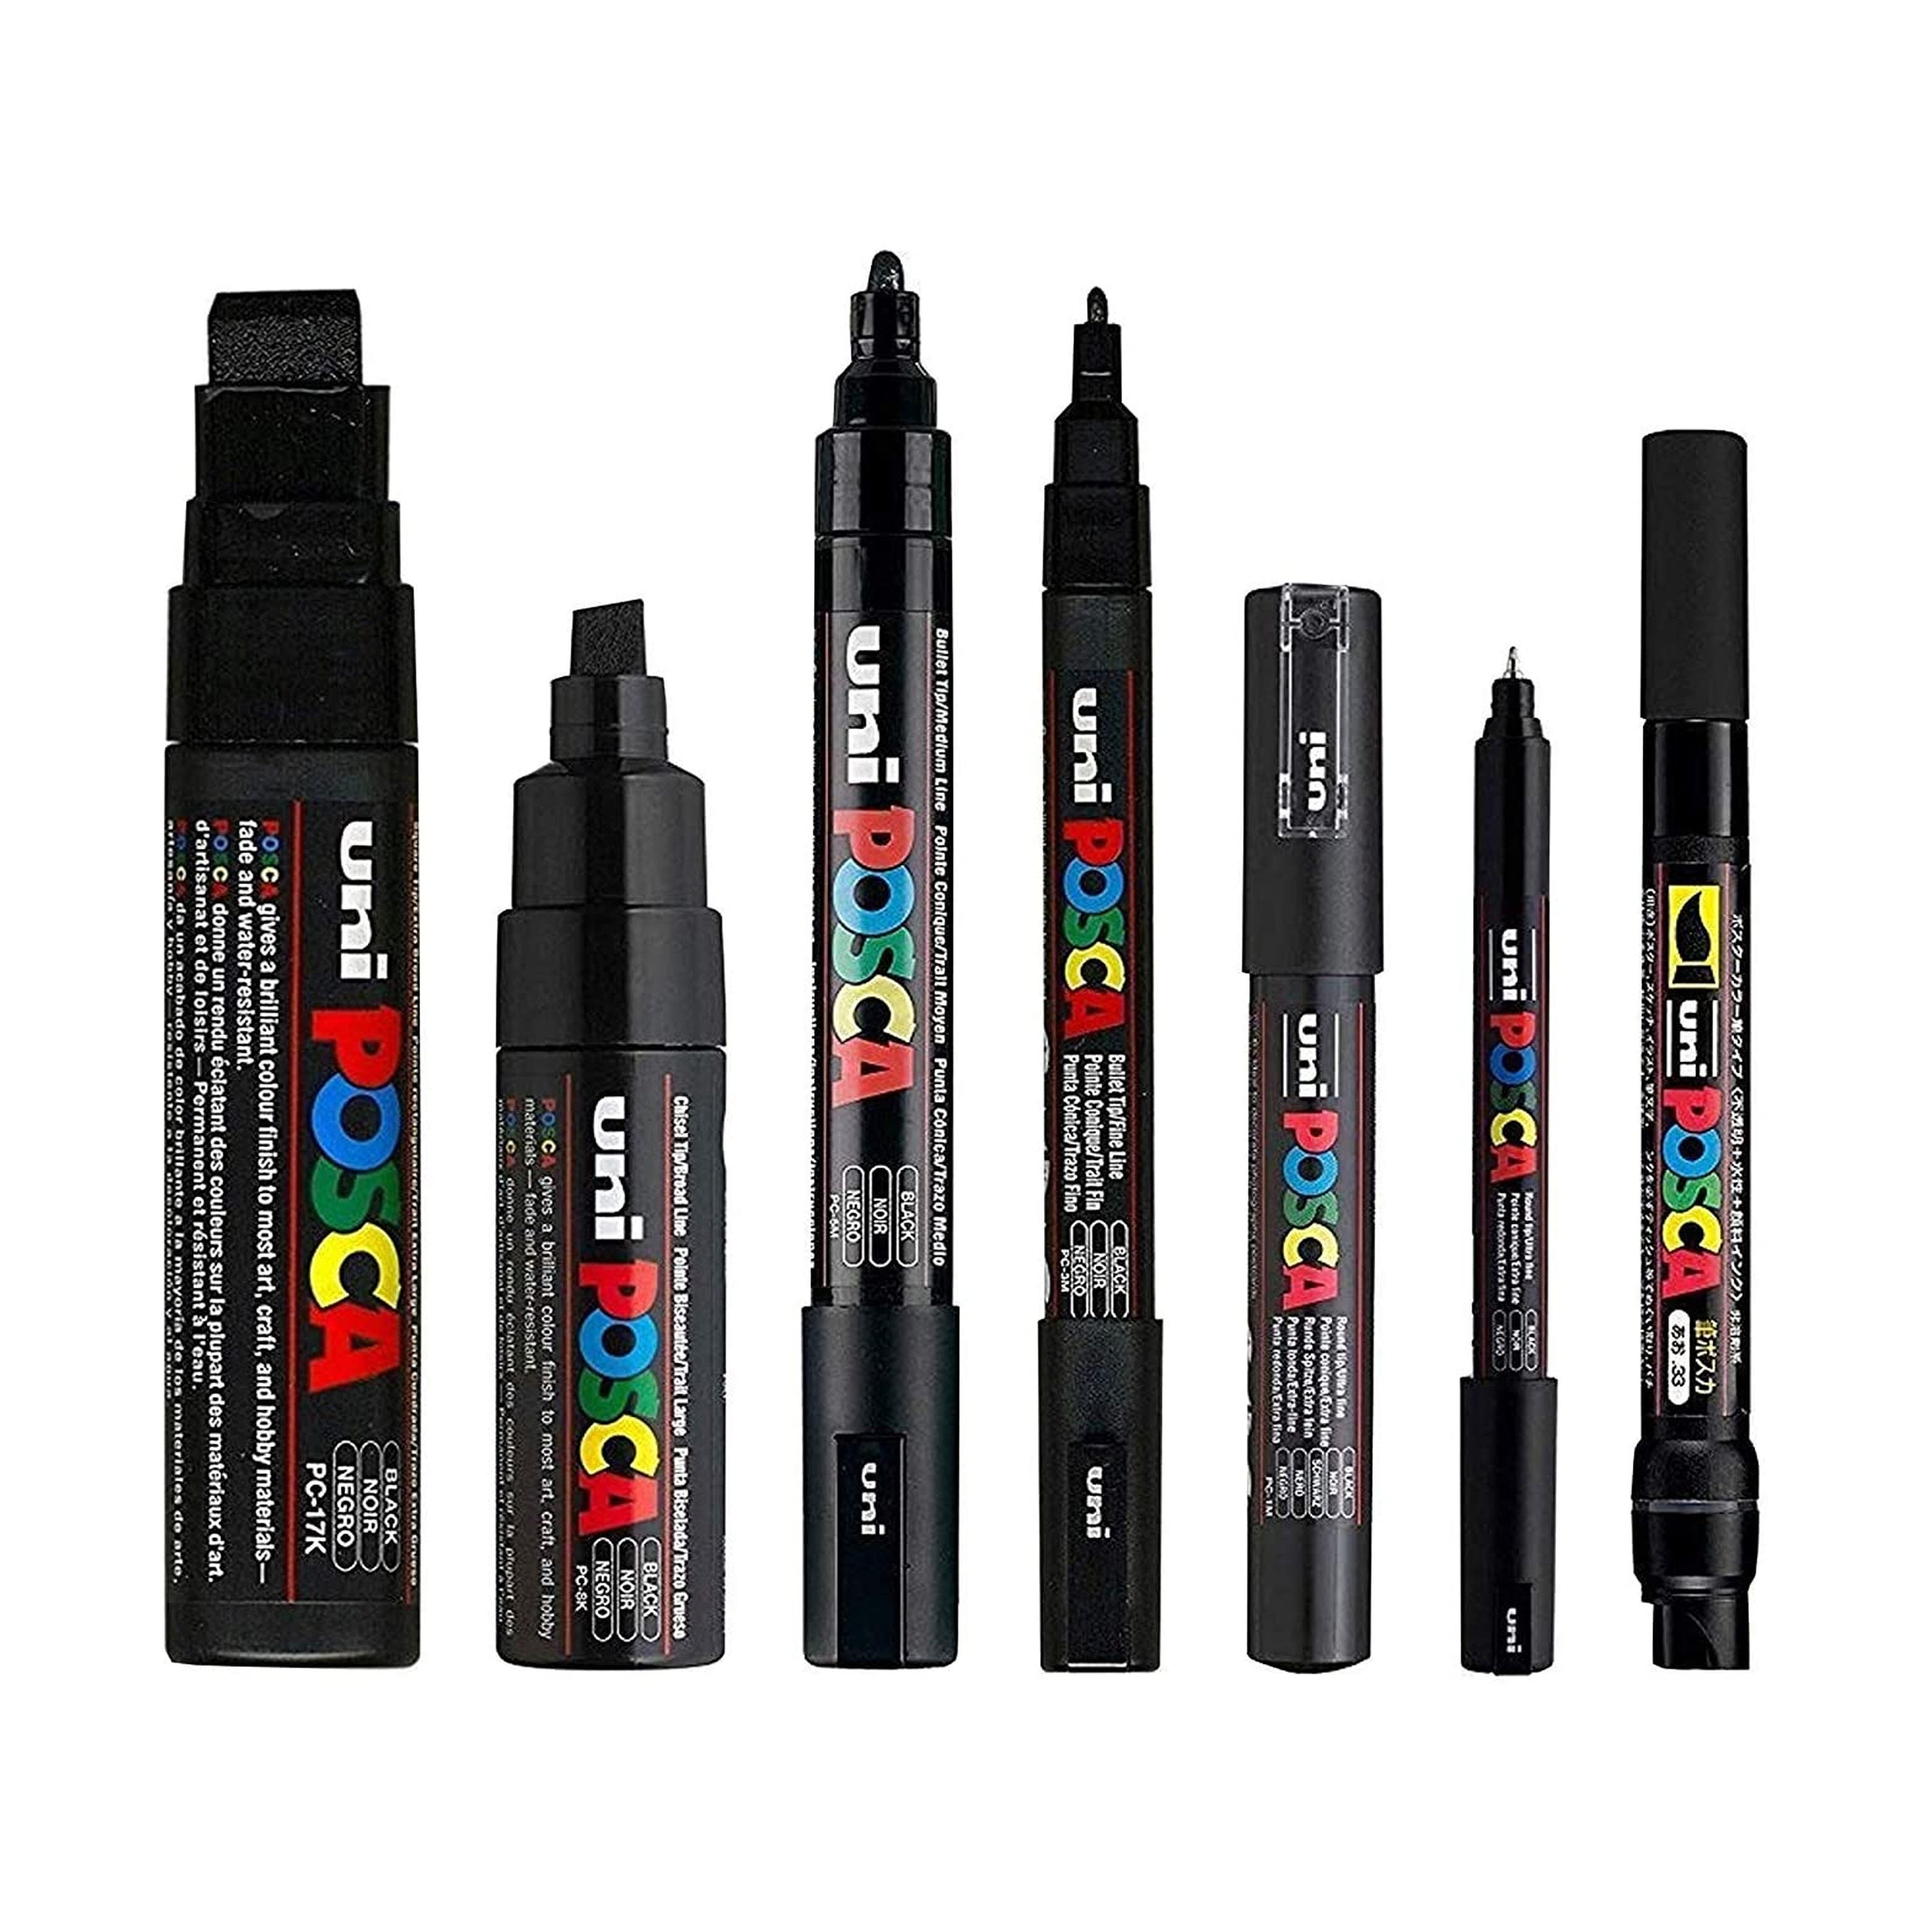 Posca Black Full Set of 7 Pens pc-17k, Pc-8k, Pc-5m, Pc-3m, Pc-1m, Pc-1mr,  Pcf-350 -  Denmark